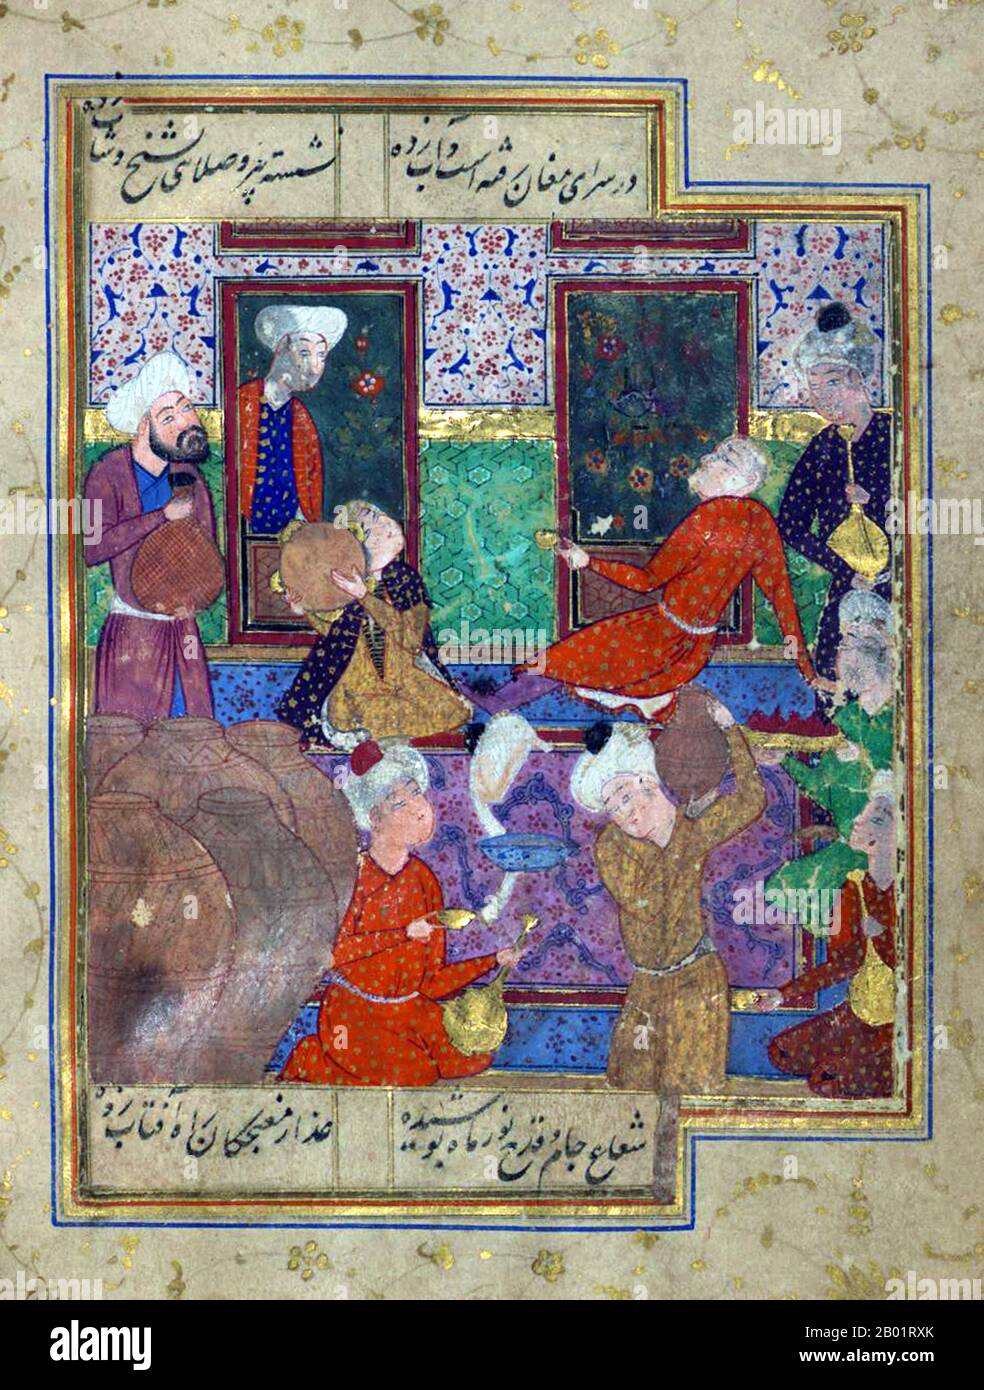 Iran/Persia: Scena di taverne con vasetti di vino e musicisti. Folio da un divan di Hafez Shirazi (c. 1325-1390), XVI secolo. Khwāja Shamsu d-Dīn Muhammad Hāfez-e Shīrāzī, conosciuto con lo pseudonimo di Hāfez, è stato un poeta persiano. Le sue opere raccolte composte da serie di poesie persiane (Divan) si trovano nelle case della maggior parte dei parlanti persiani in Iran e Afghanistan, così come altrove nel mondo, che imparano le sue poesie a memoria e le usano come proverbi e detti fino ad oggi. La sua vita e le sue poesie sono state oggetto di molte analisi, commenti e interpretazioni. Foto Stock